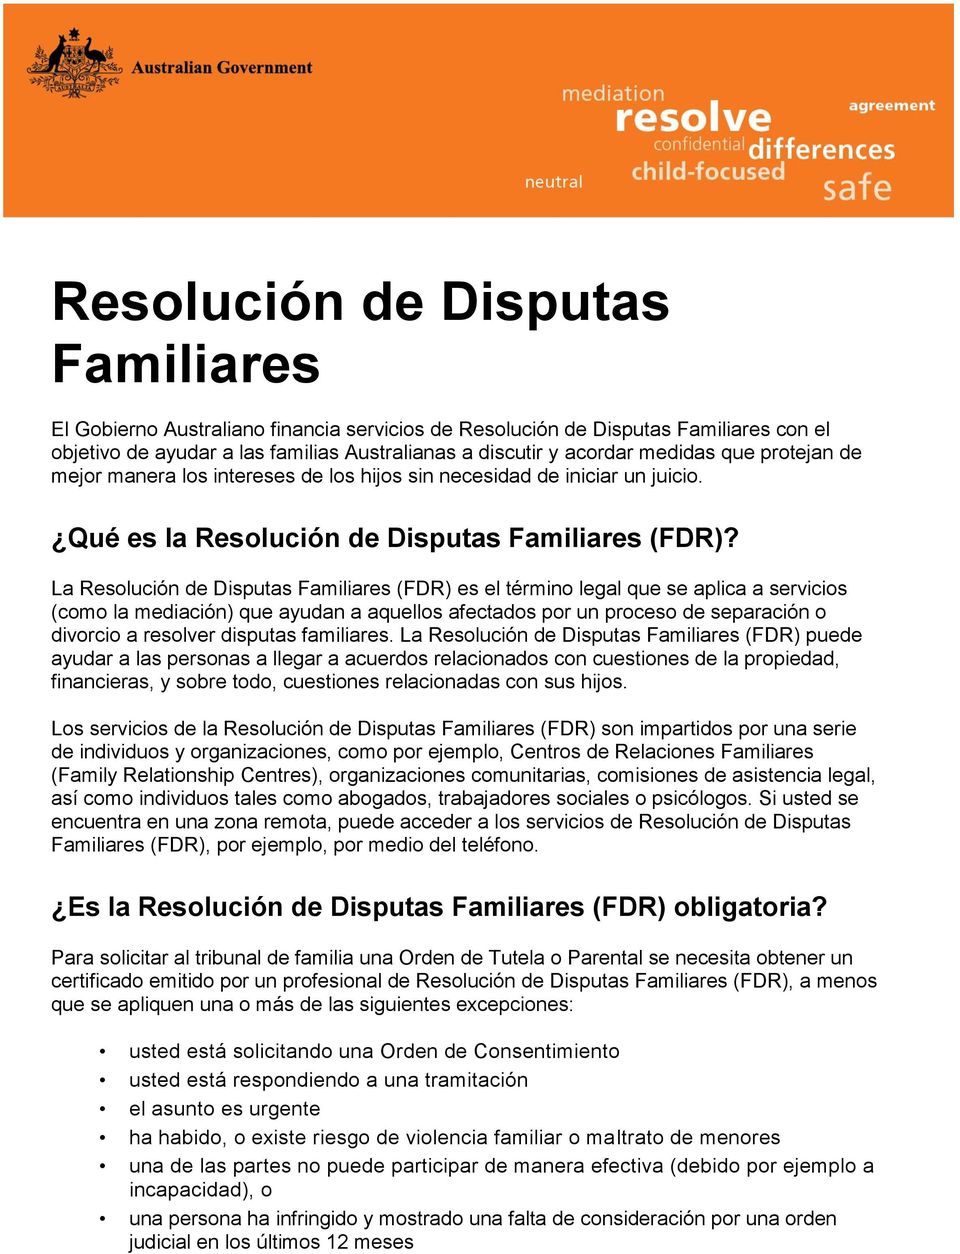 Qué es la La Resolución de Disputas Familiares (FDR) es el término legal que se aplica a servicios (como la mediación) que ayudan a aquellos afectados por un proceso de separación o divorcio a